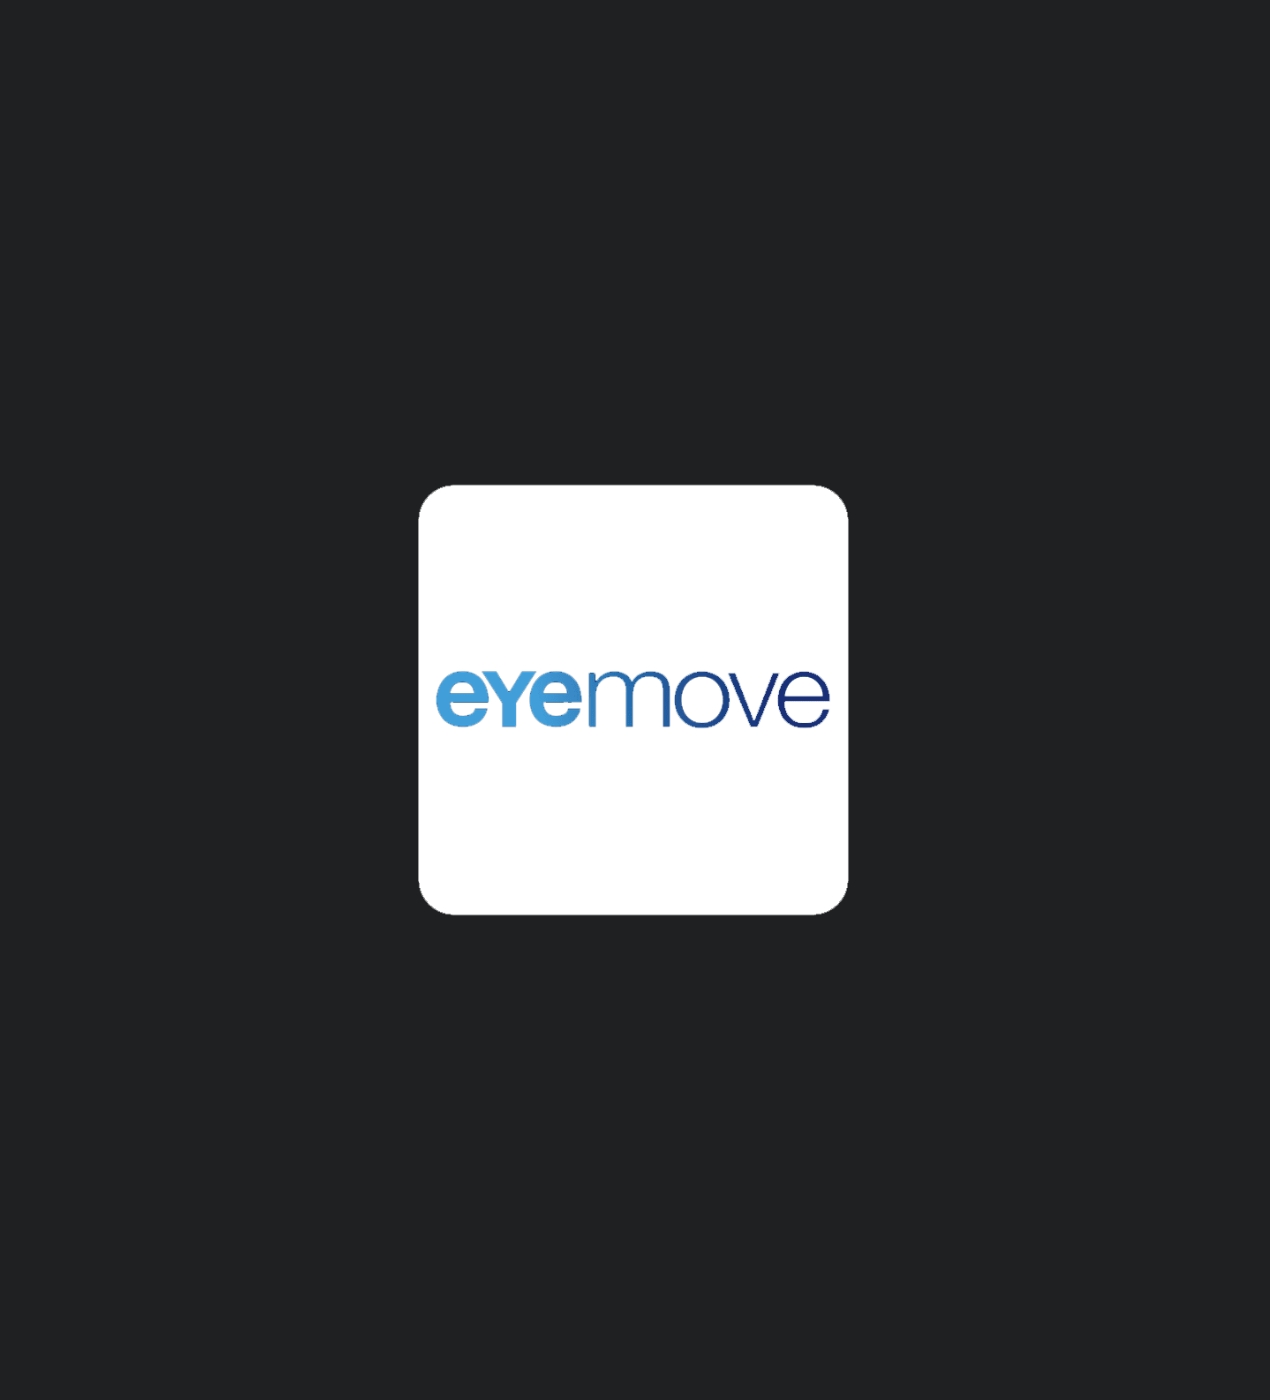 logo eyemove zkr integratie